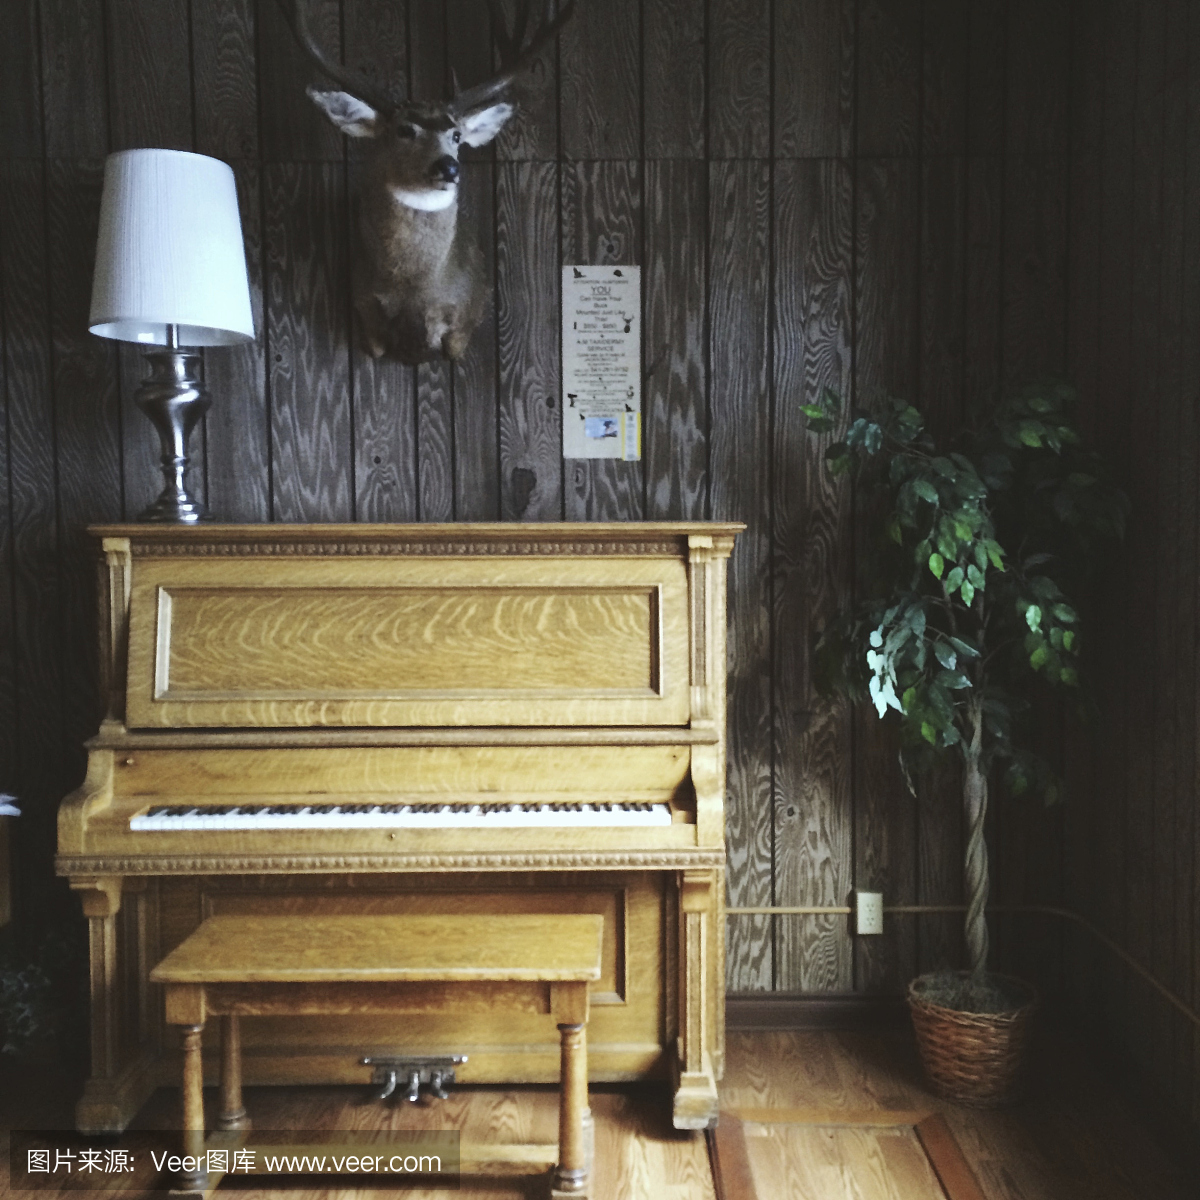 老复古钢琴和分类标签动物头在木屋